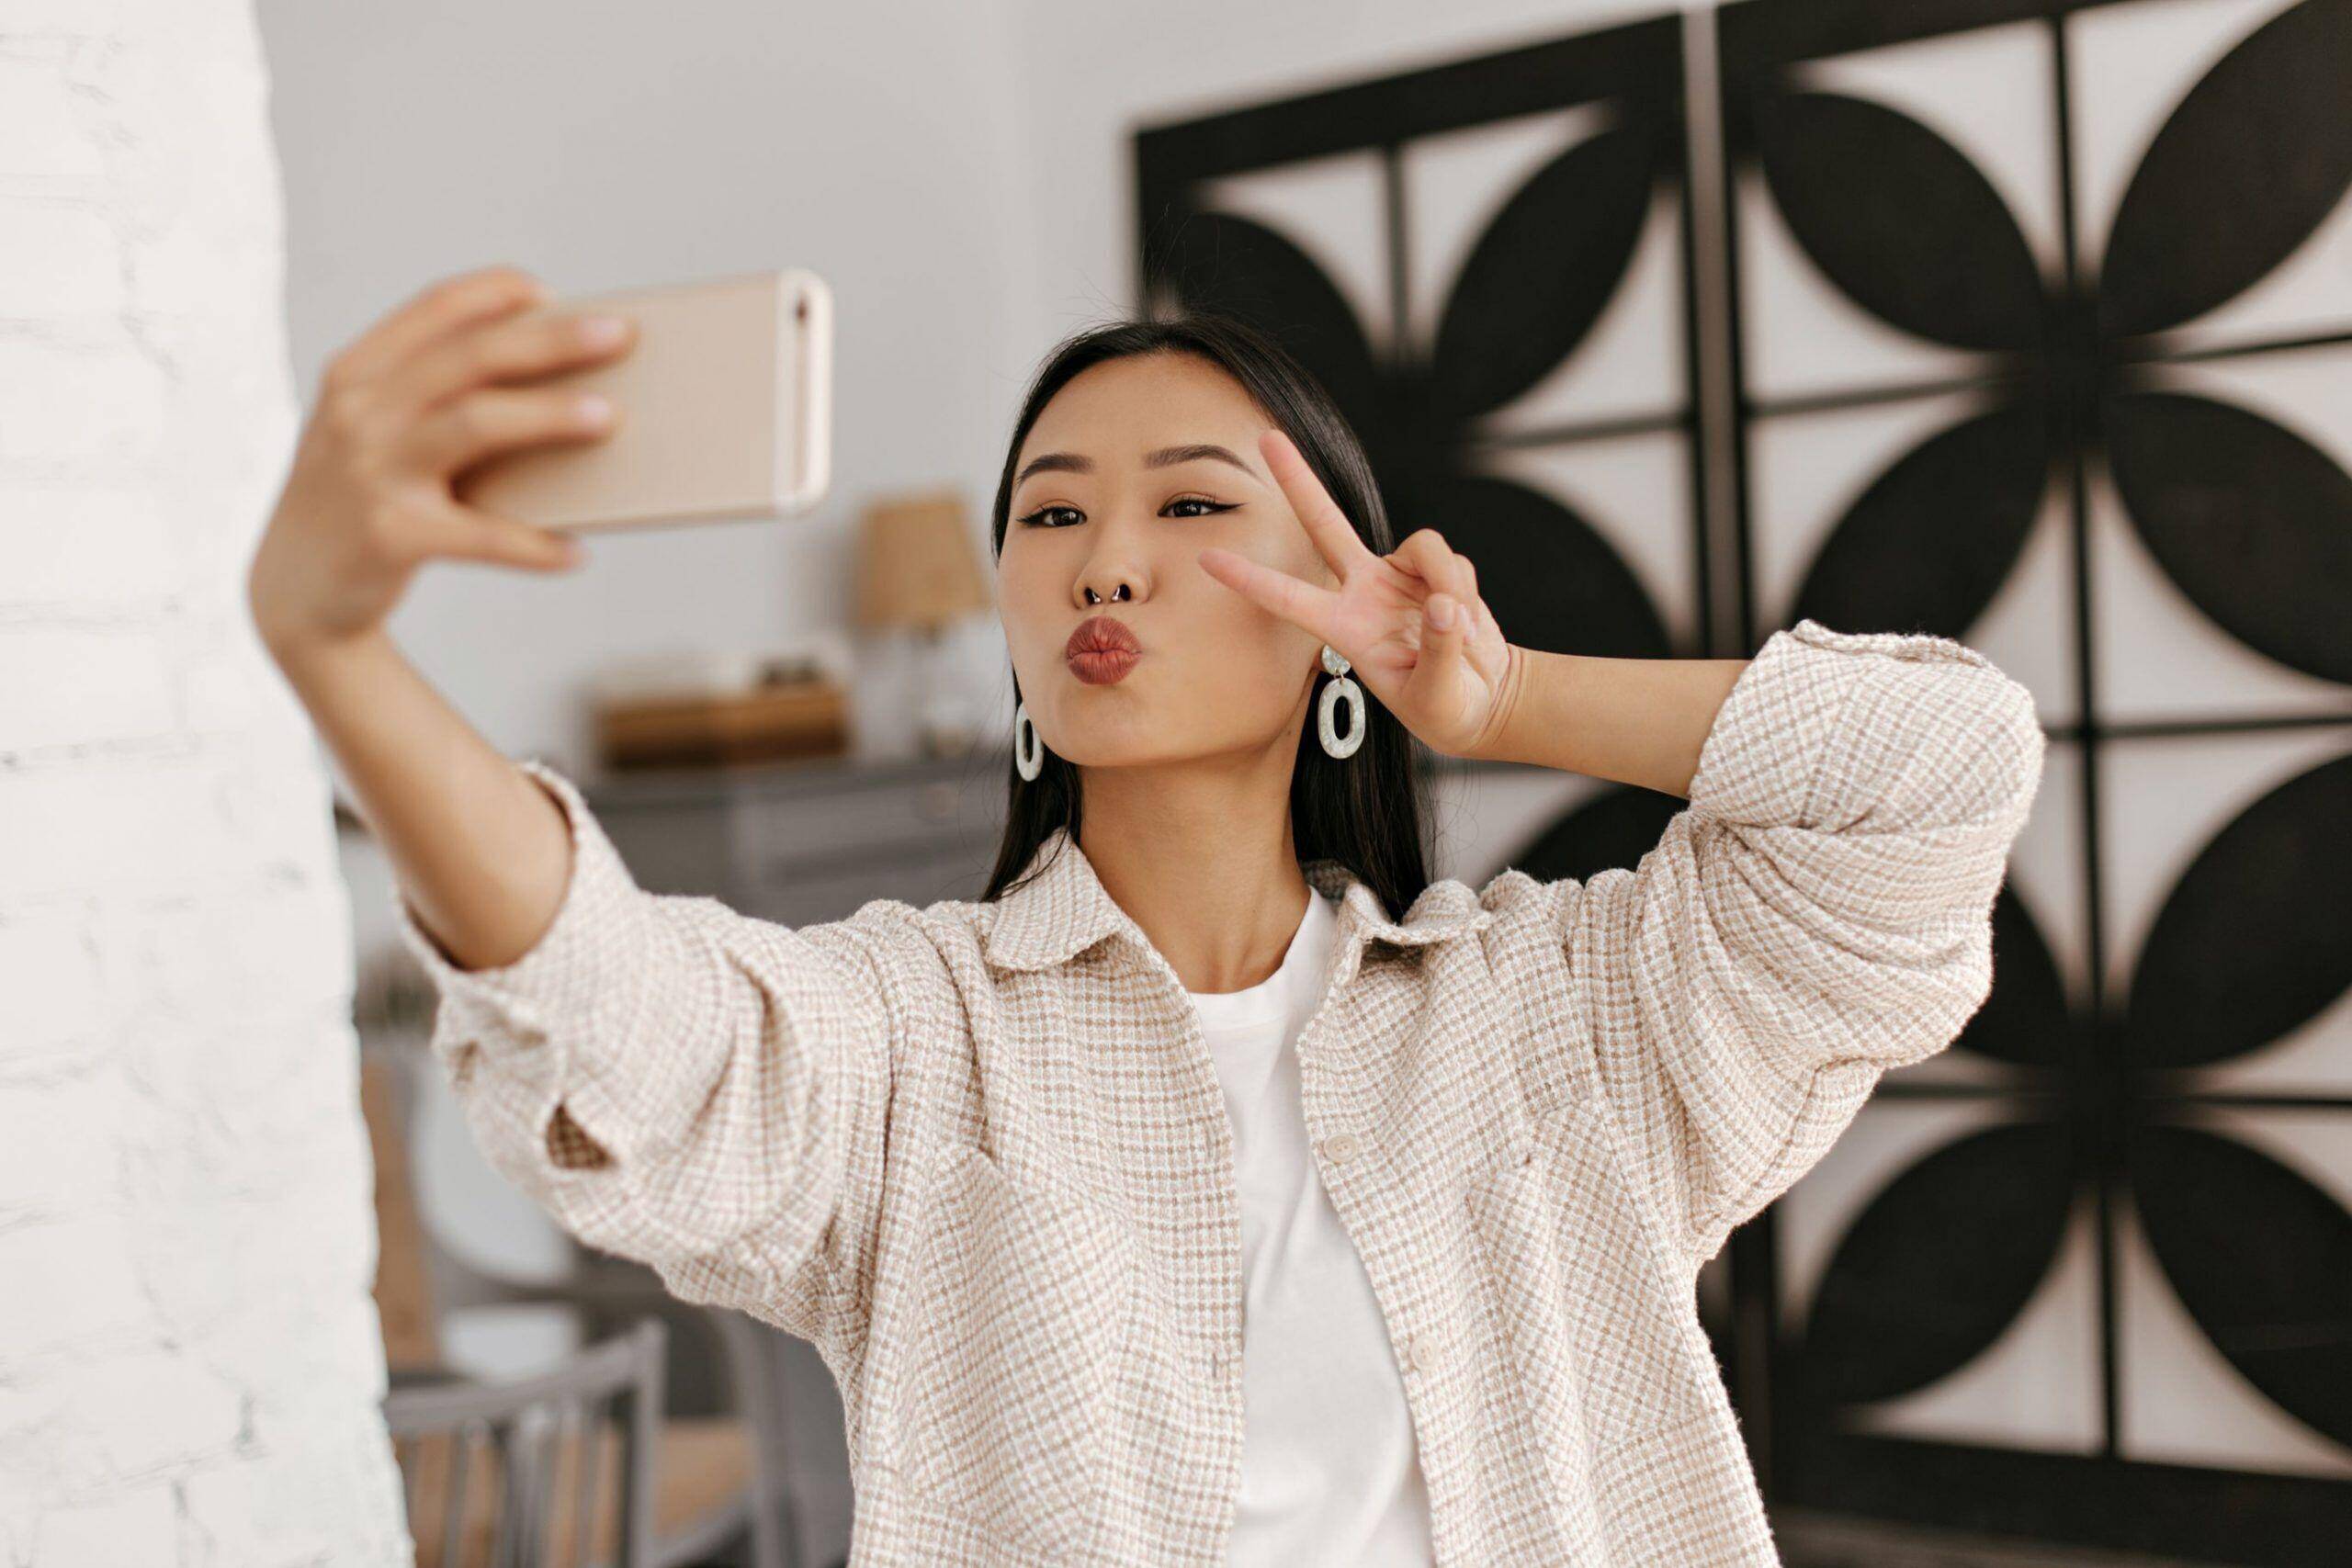 Comment les prises de selfies avec filtres affectent votre santé mentale